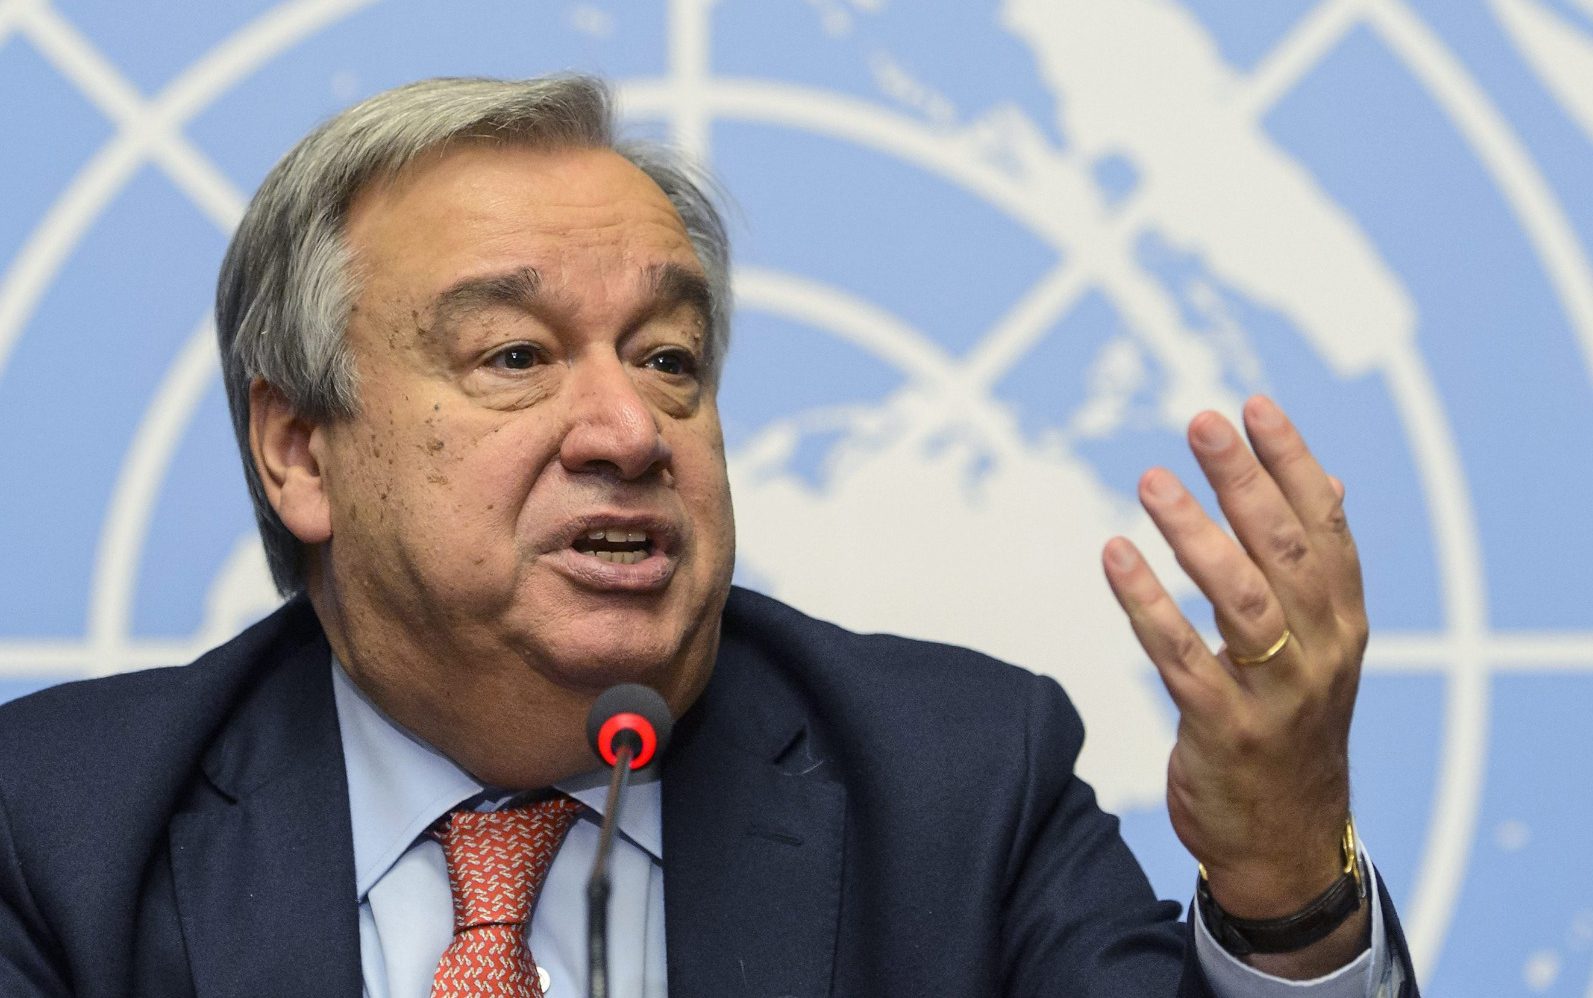 ООН не намерена принимать чью-либо сторону на переговорах по Венесуэле – Гутерриш